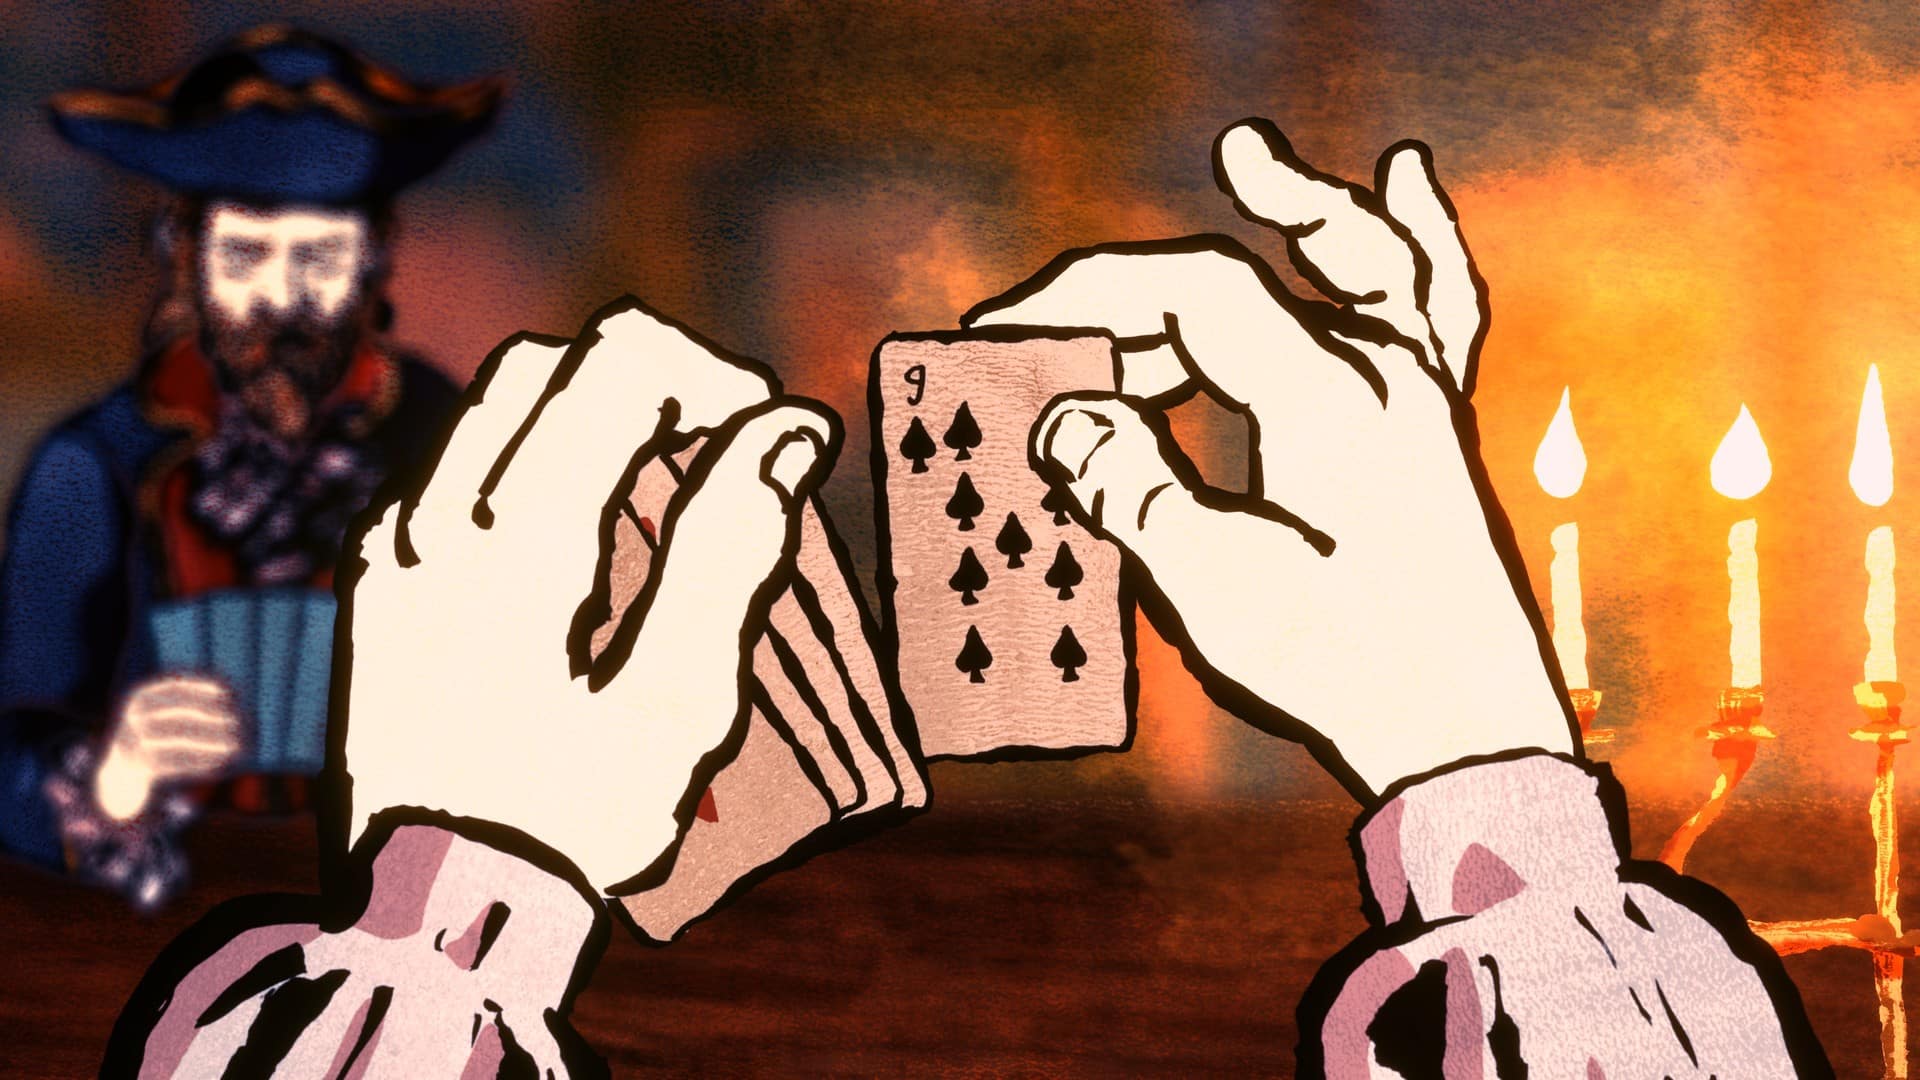 [閒聊] 卡牌冒險新作《Card Shark》獲極度好評